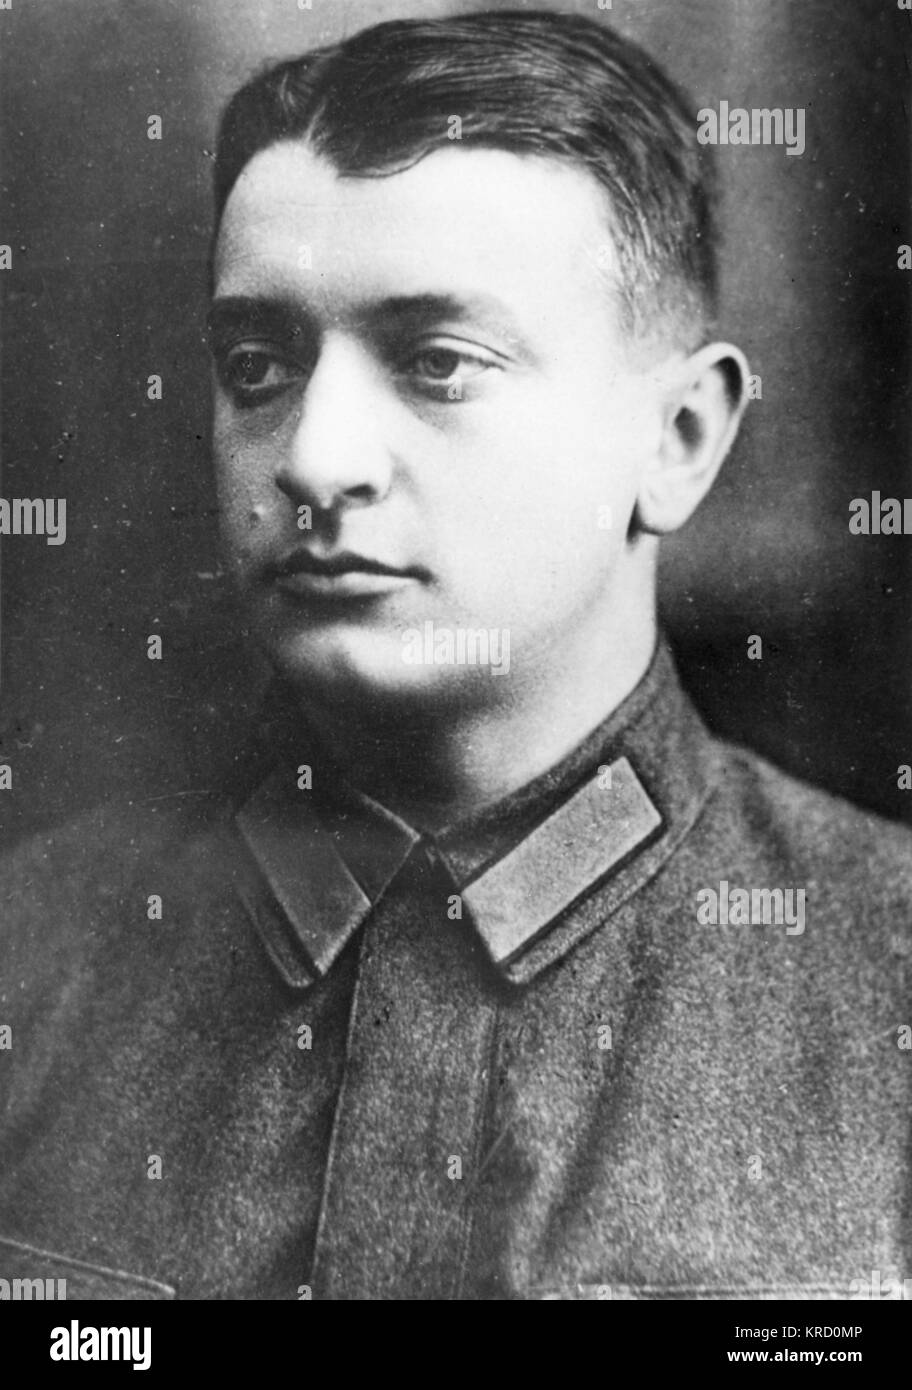 Michail Nikolajewitsch Tuchatschewski, sowjetischen militärischen Befehlshaber, Chef der Roten Armee (1925-28). Er war einer der prominentesten Opfer von Stalins Großer Säuberung von den späten 1930er Jahren. Datum: 1893 - 1937 Stockfoto